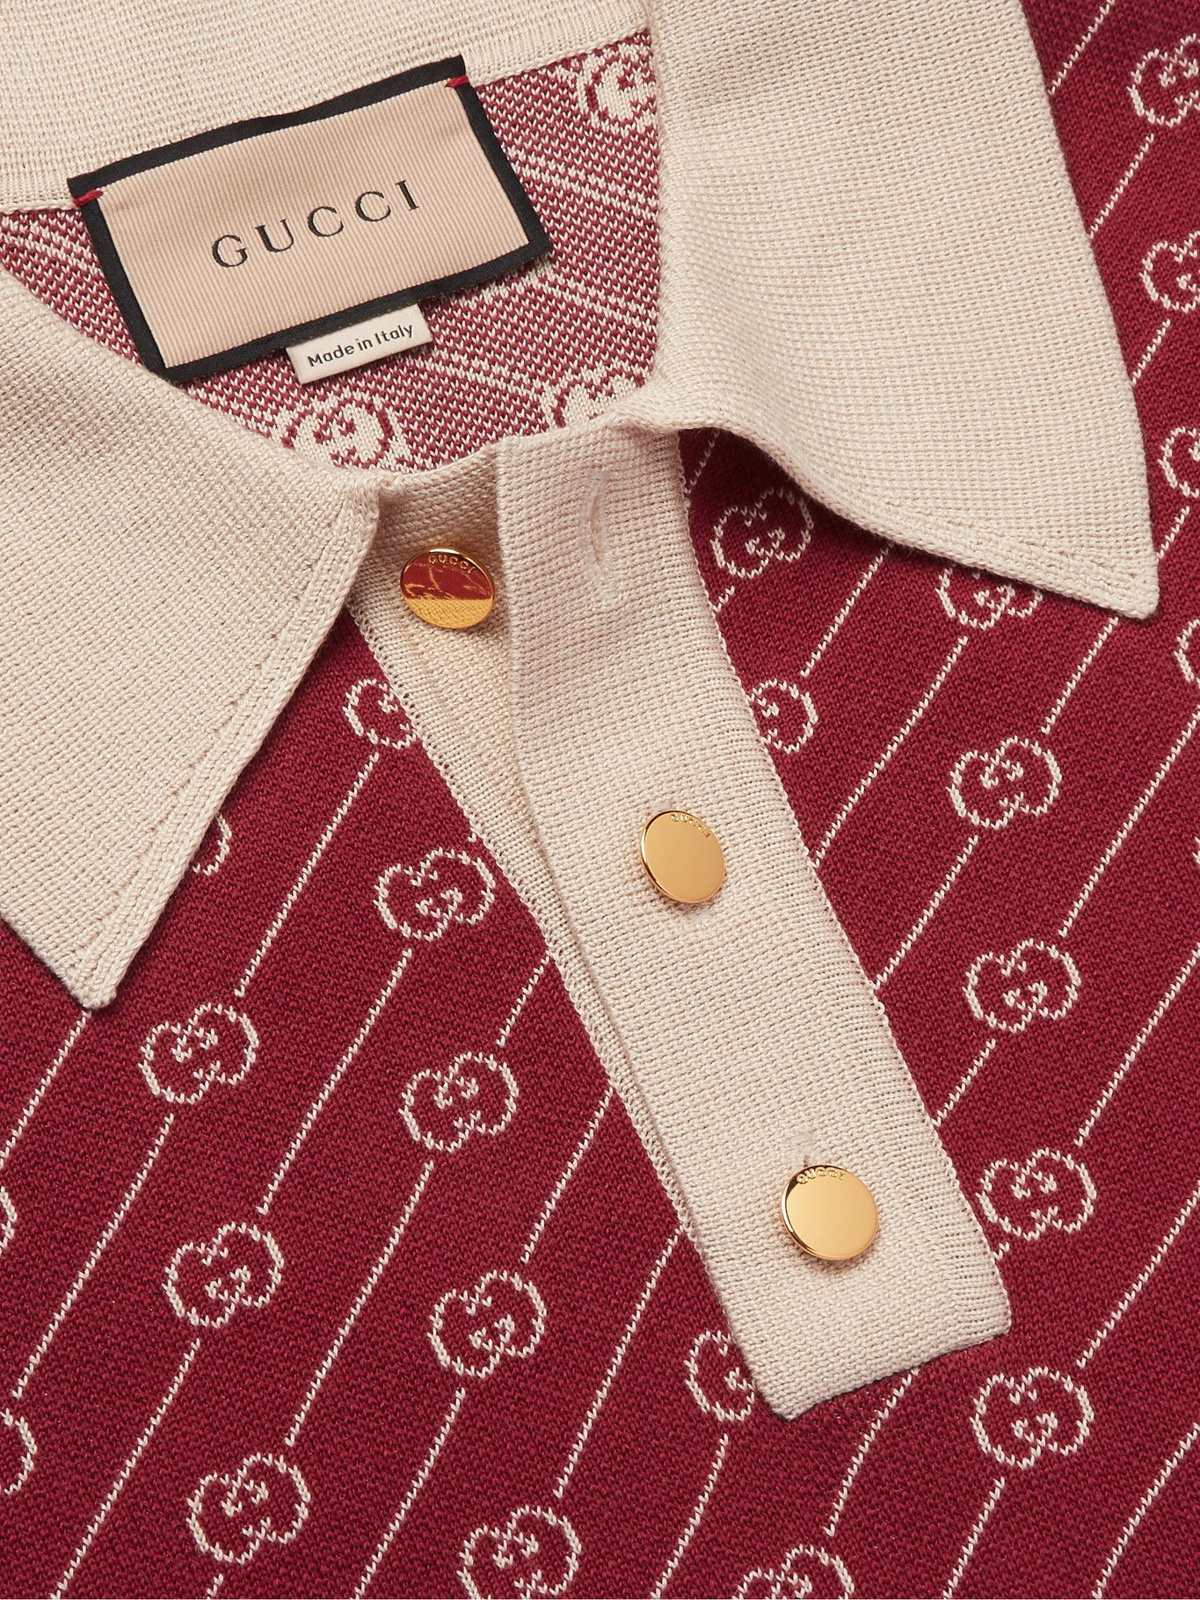 Gucci GG Supreme Silk Shirt in Khaki